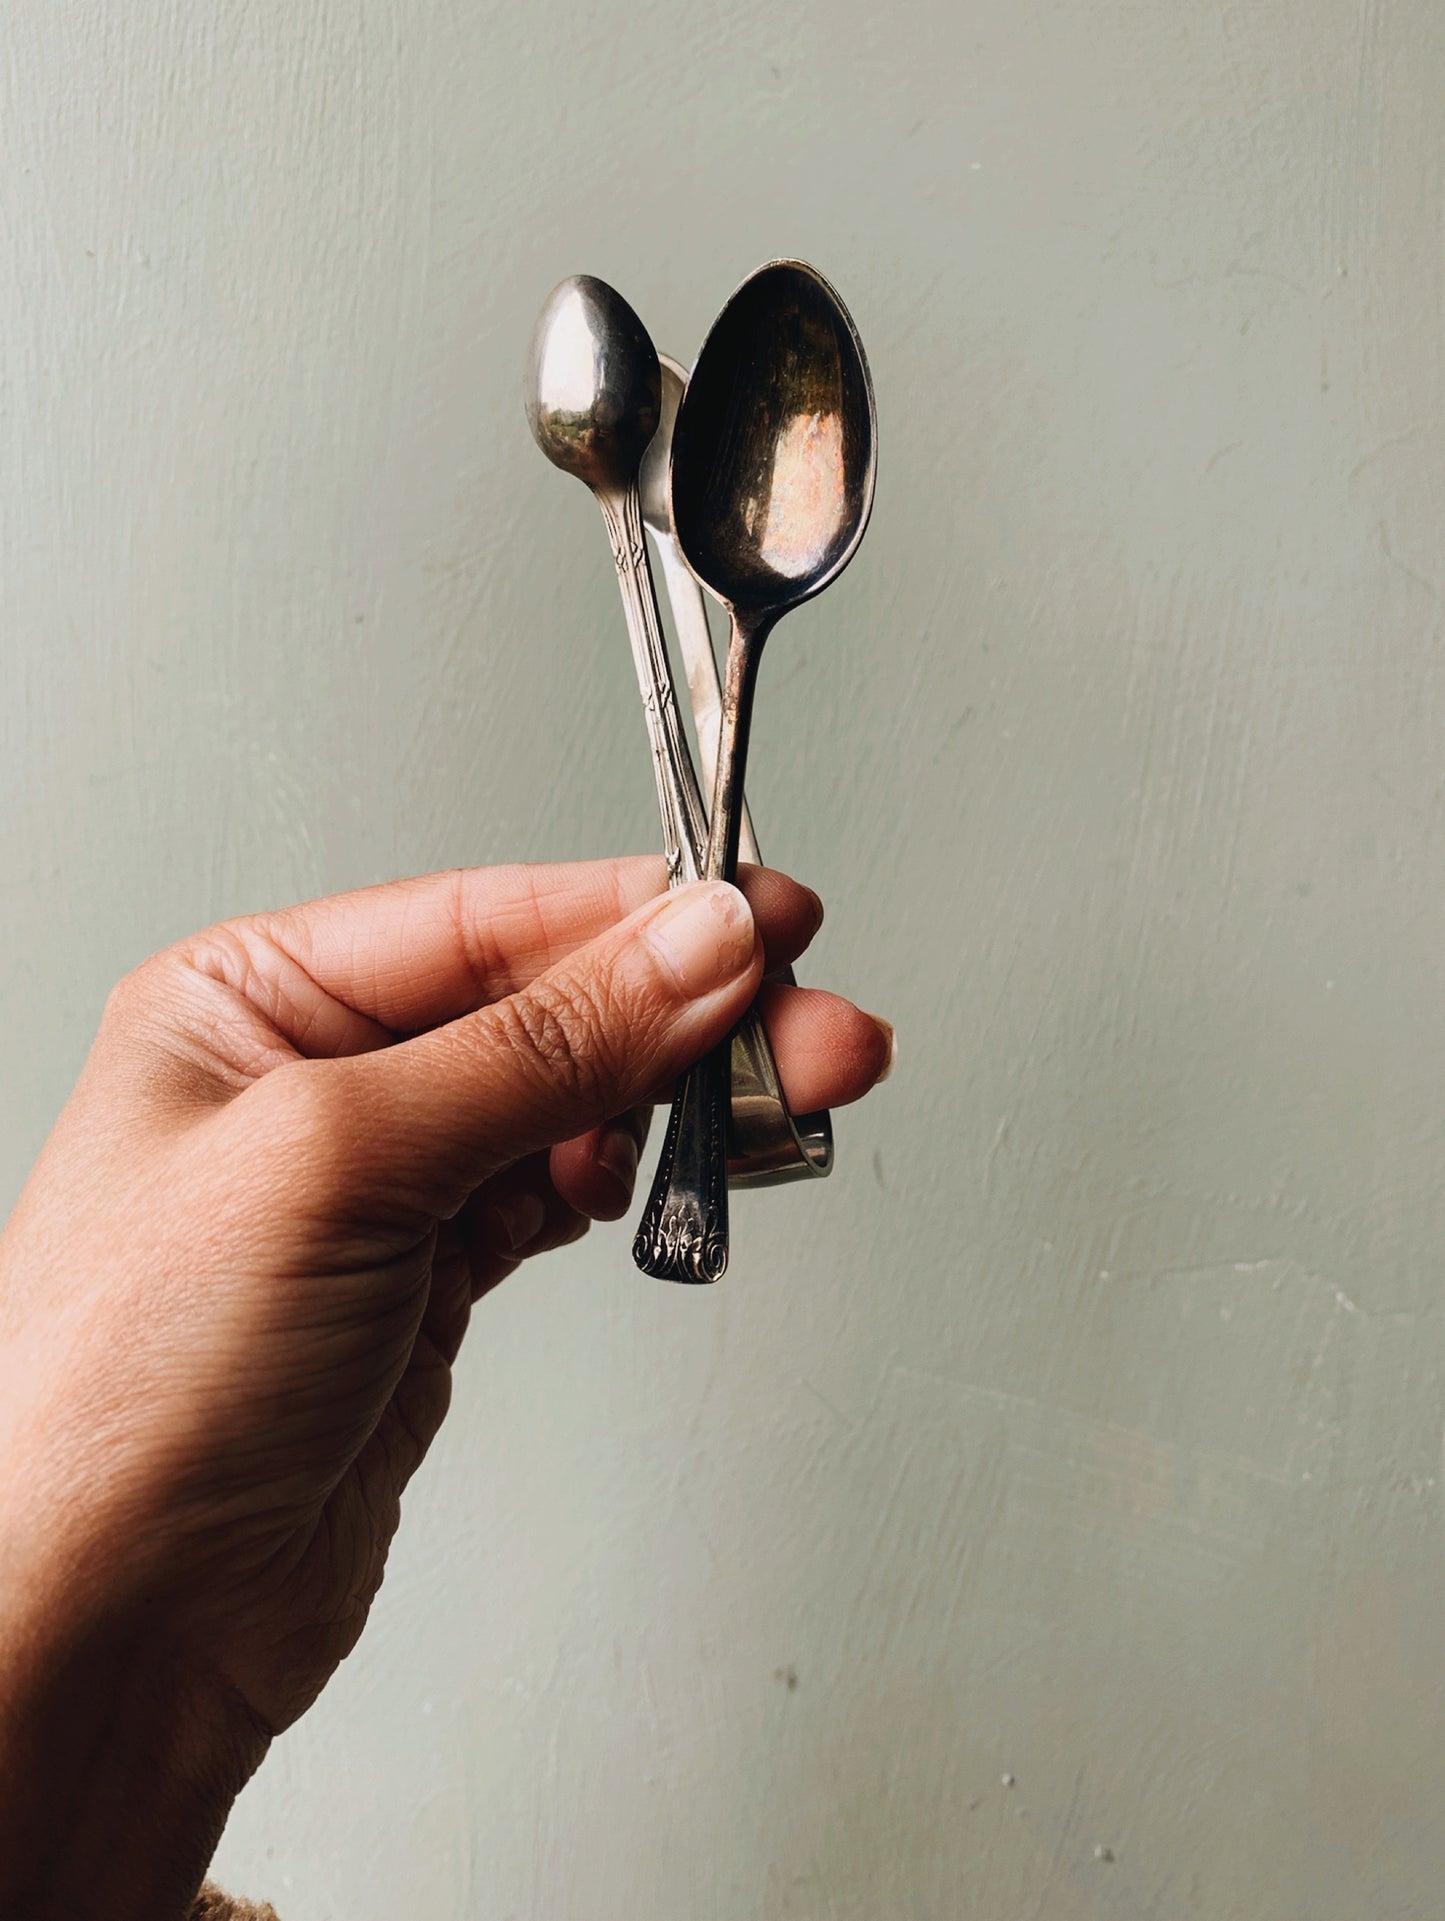 Six Antique Tea Spoons & Sugar Pincer